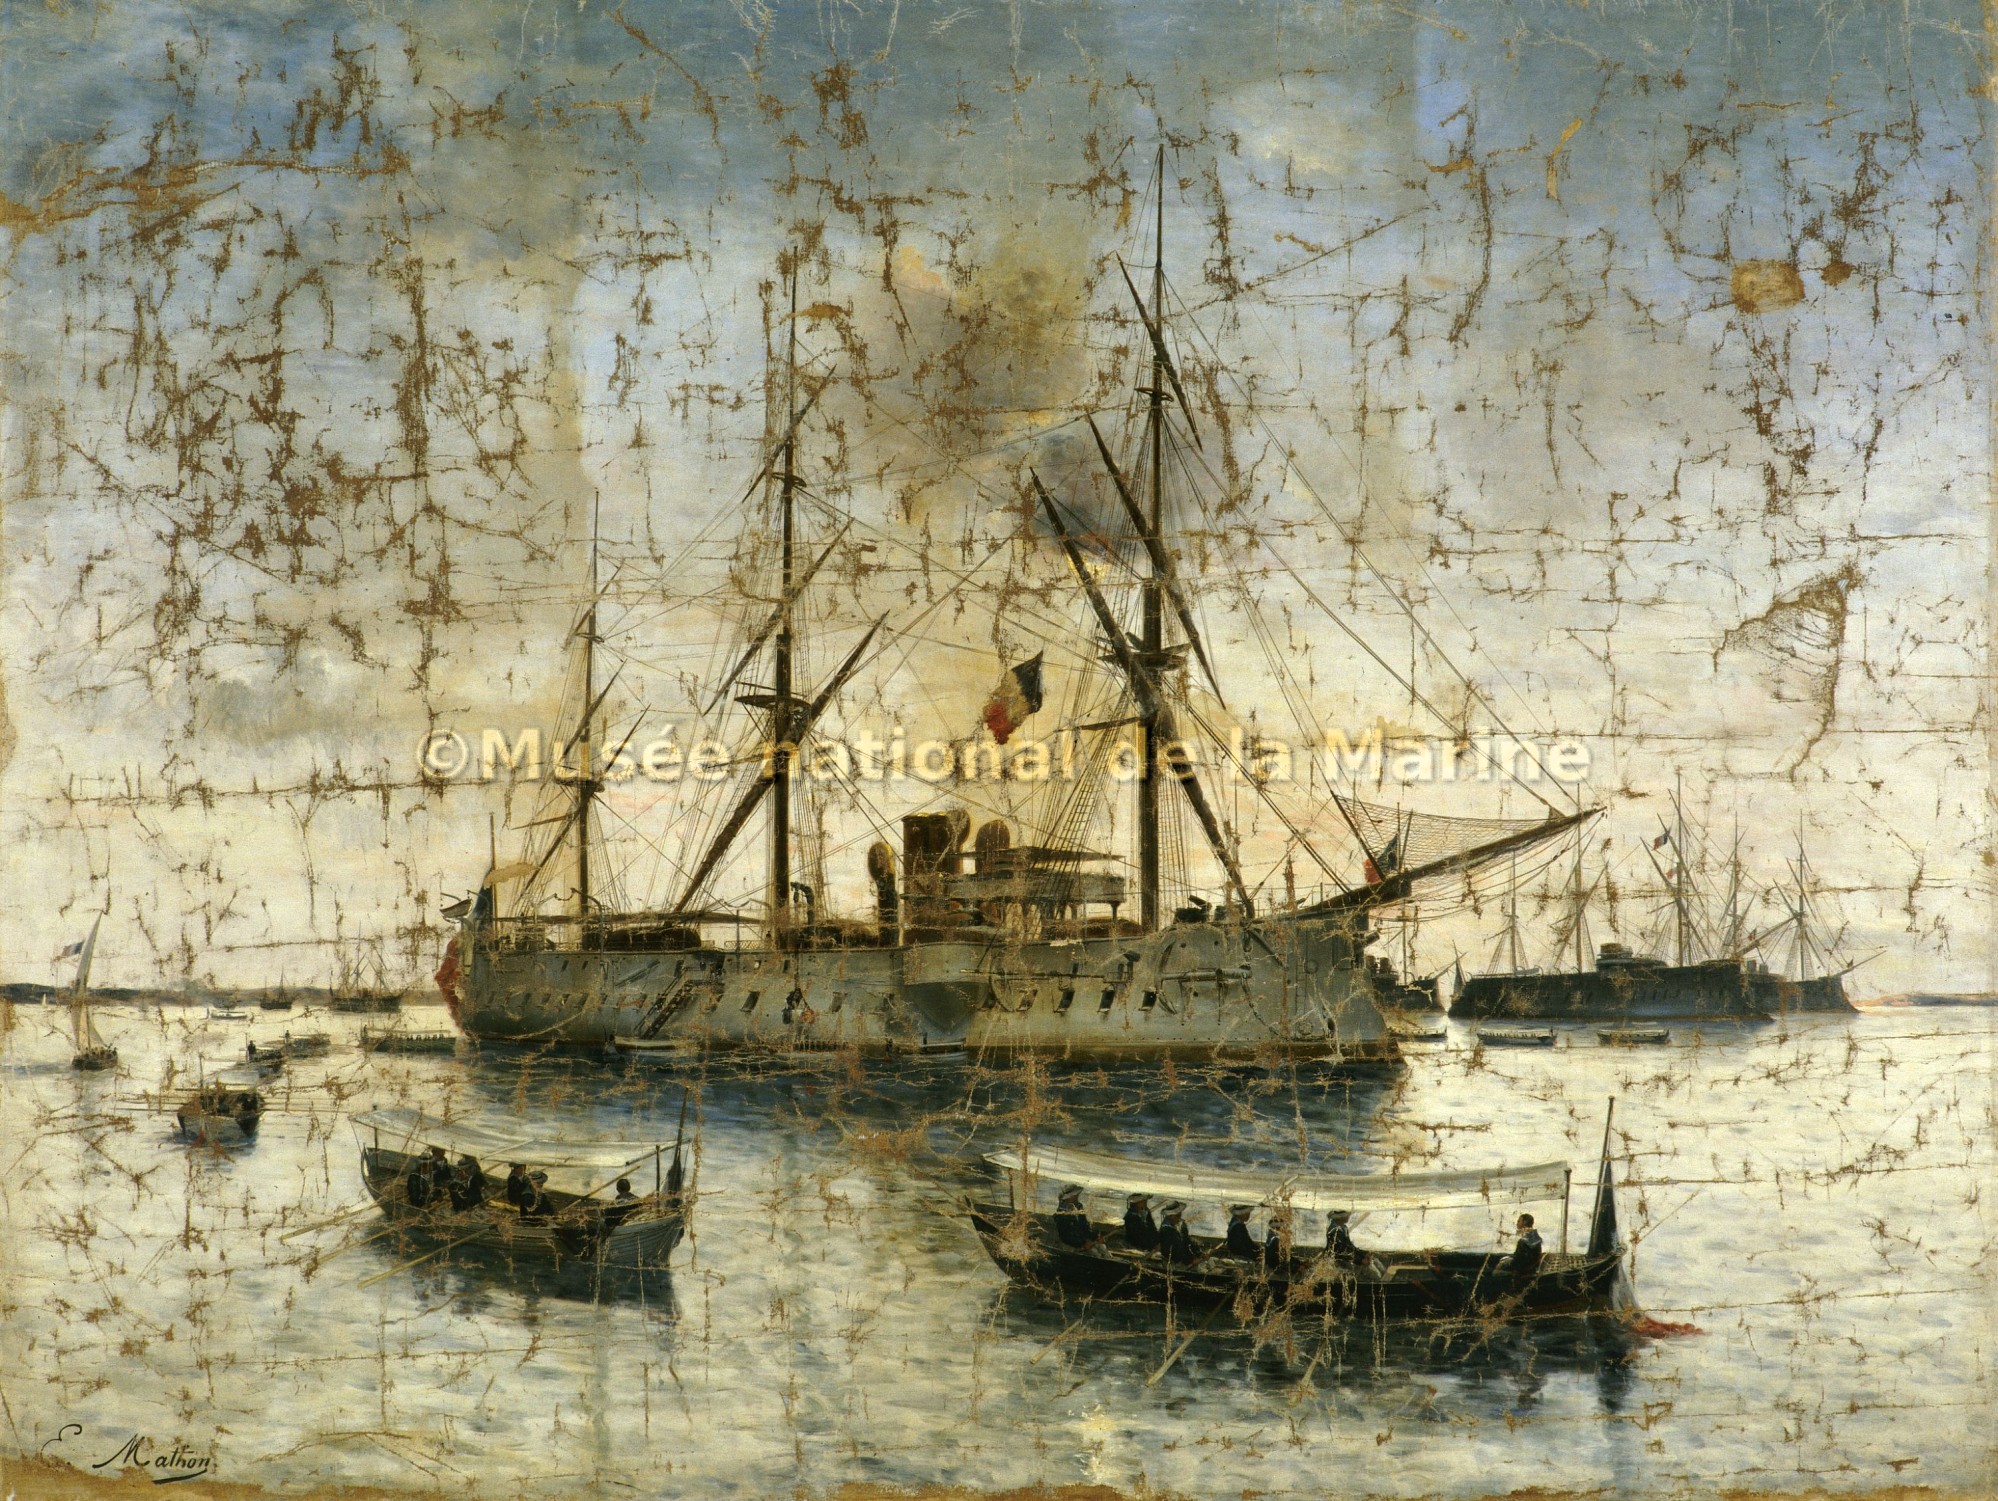 Retour des cendres de l'amiral Courbet aux Salins d'Hyères en 1885 sur le Bayard (avant restauration)